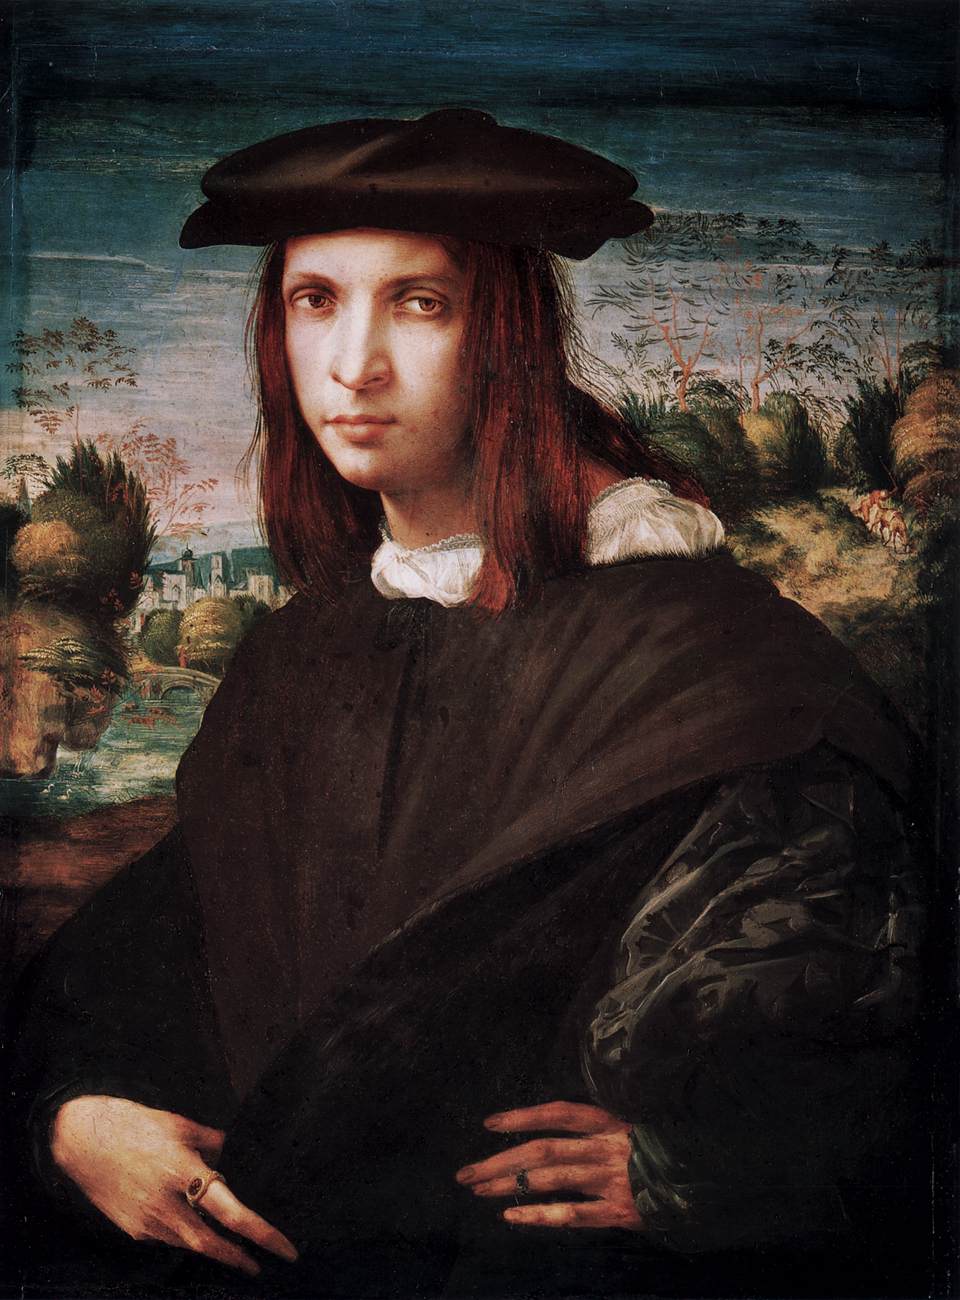 Rosso Fiorentino - March 8, 1495 - November 14, 1540